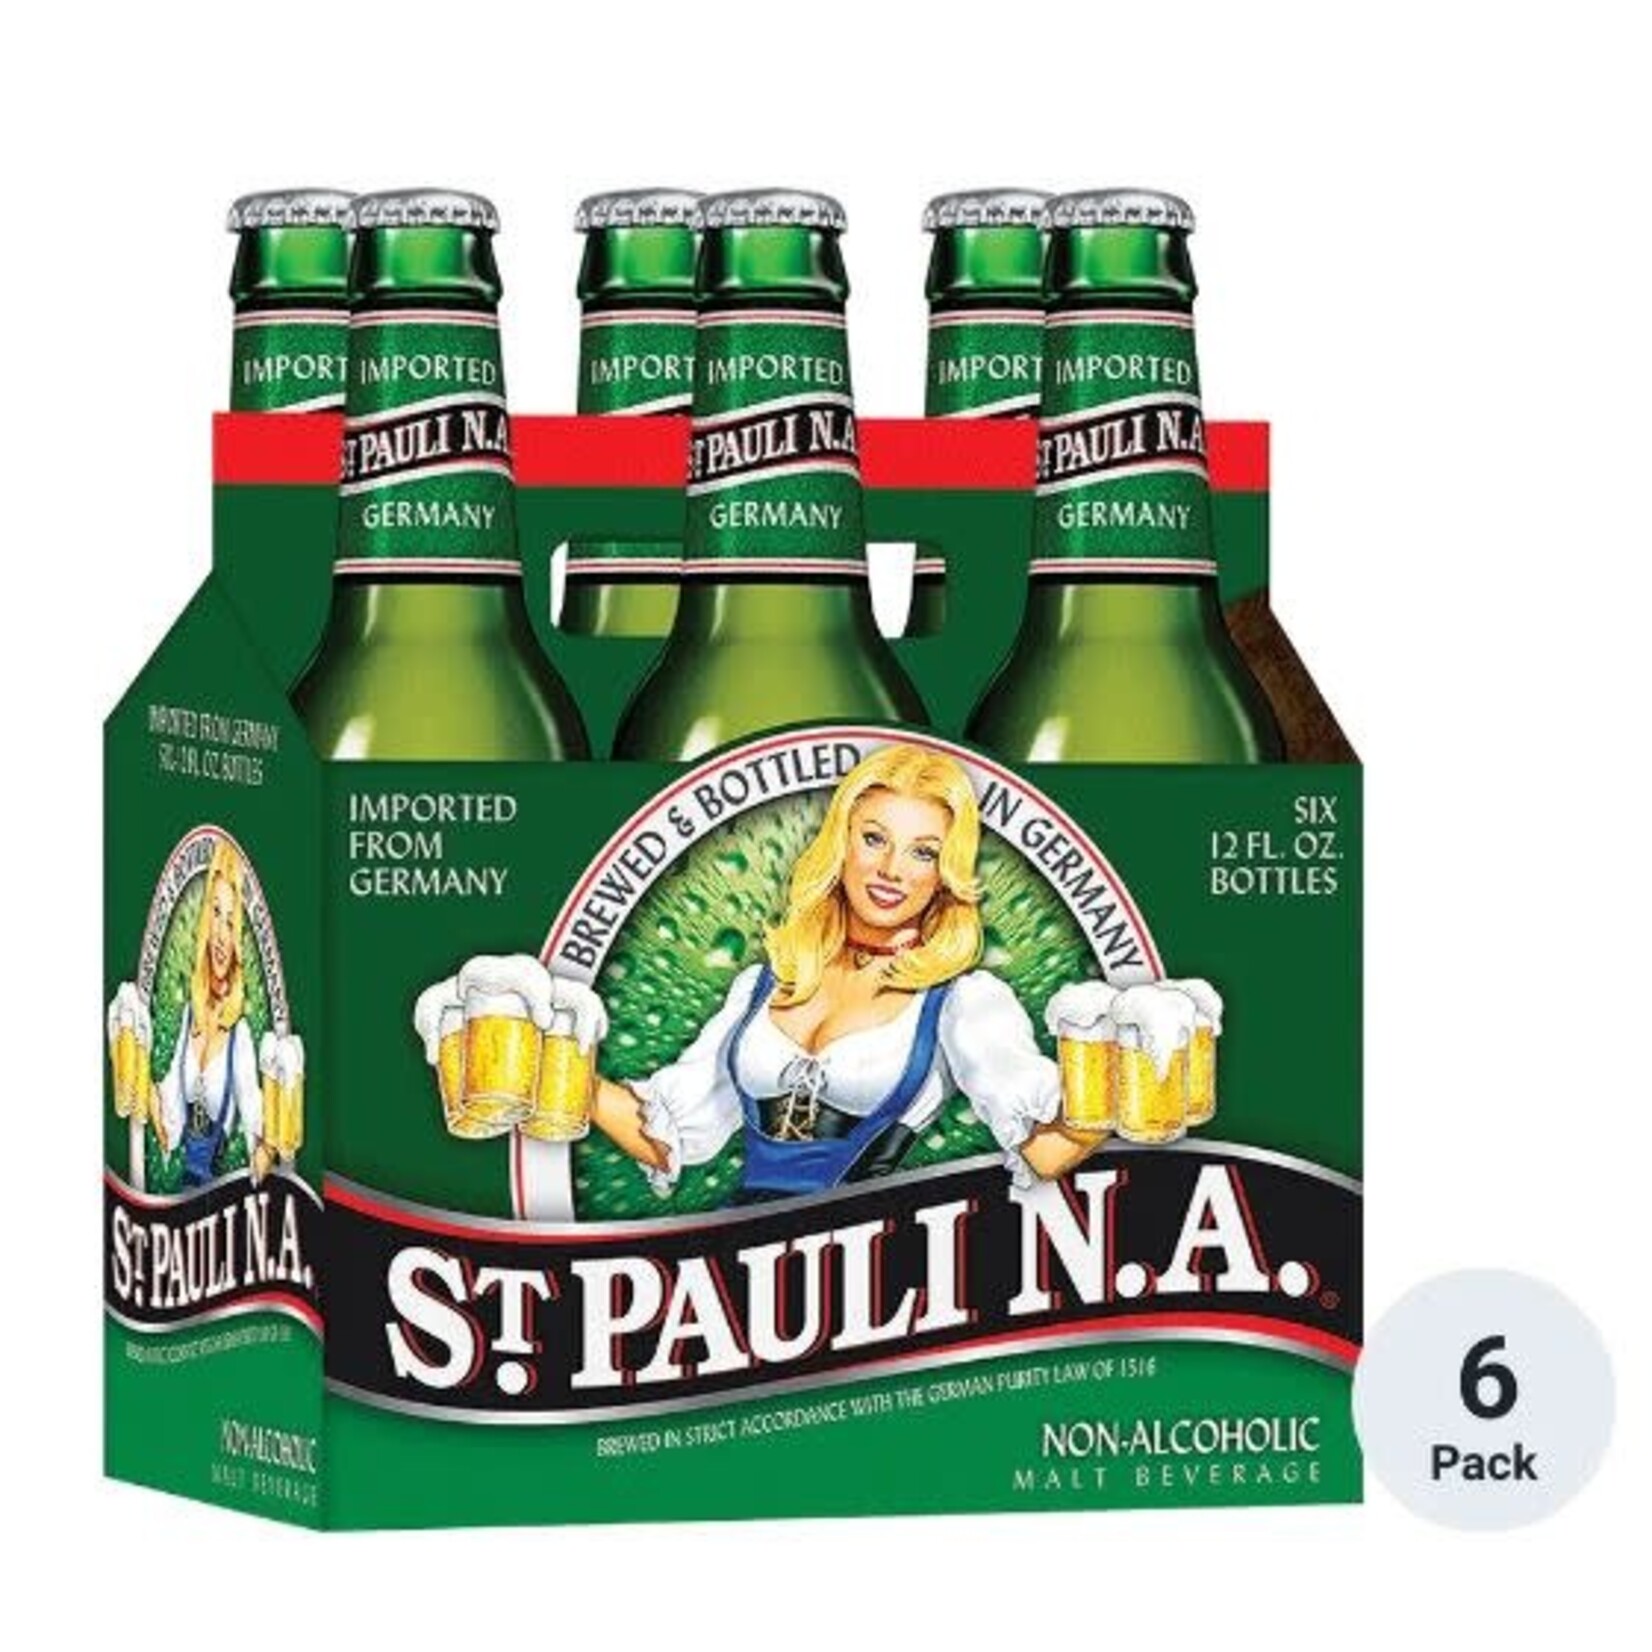 Saint Pauli St. Pauli Non-Alcoholic Malt Beverage 6 Pack Bottles 12 fl oz